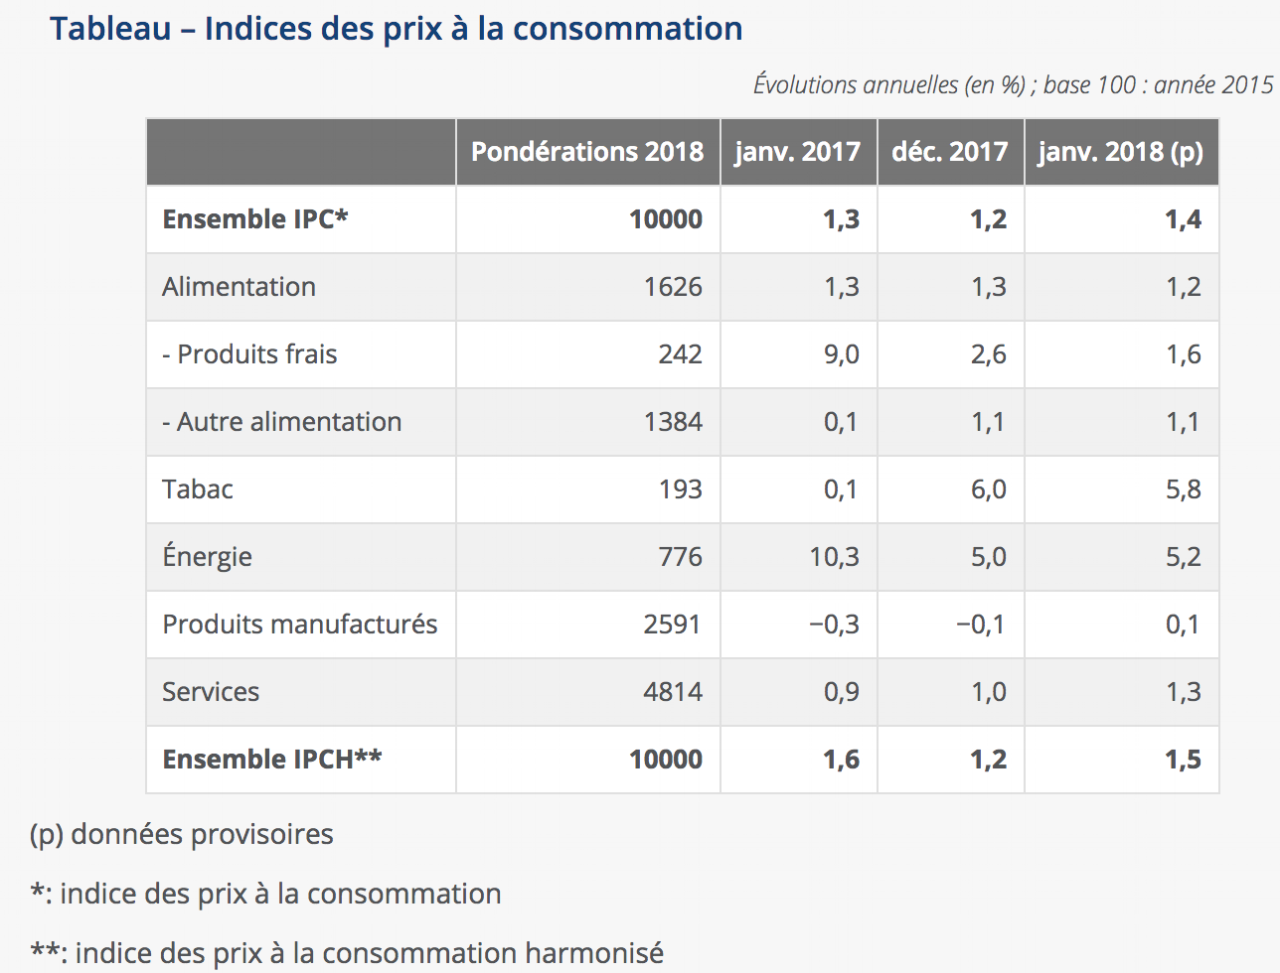 Tableau des indices des prix à la consommation